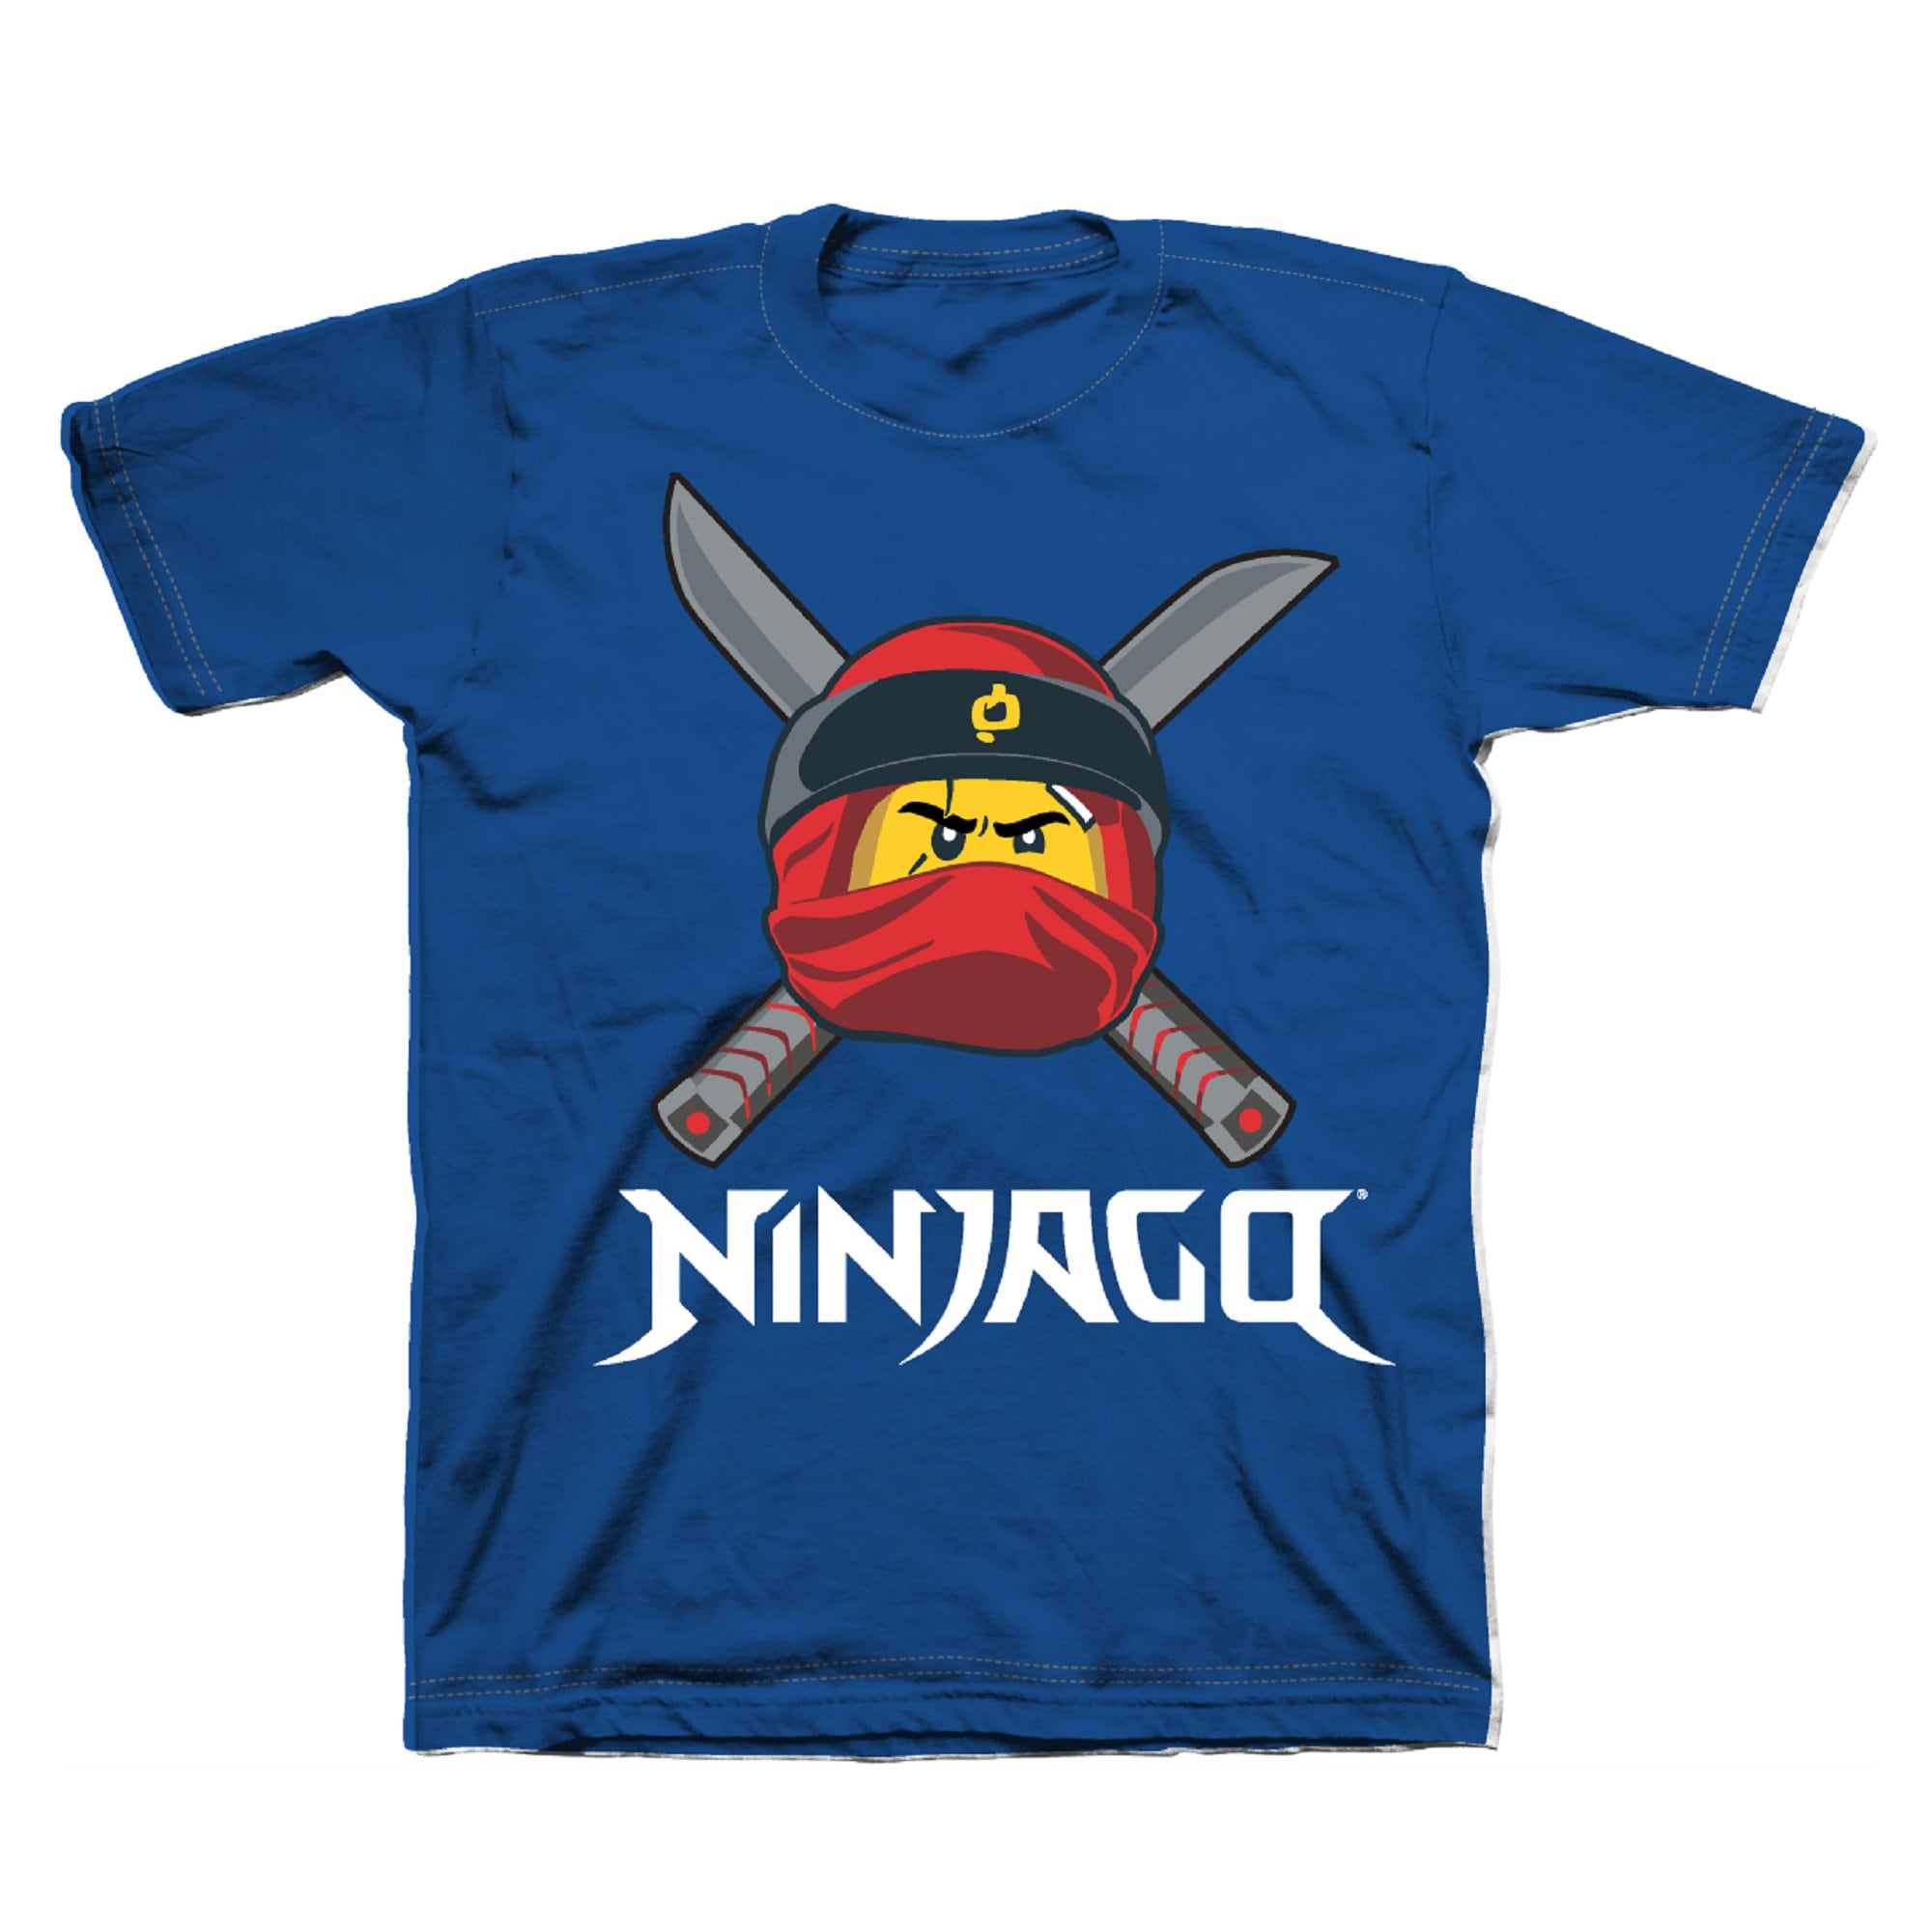 LEGO Ninjago Longsleeve Shirt Camiseta para Niños 